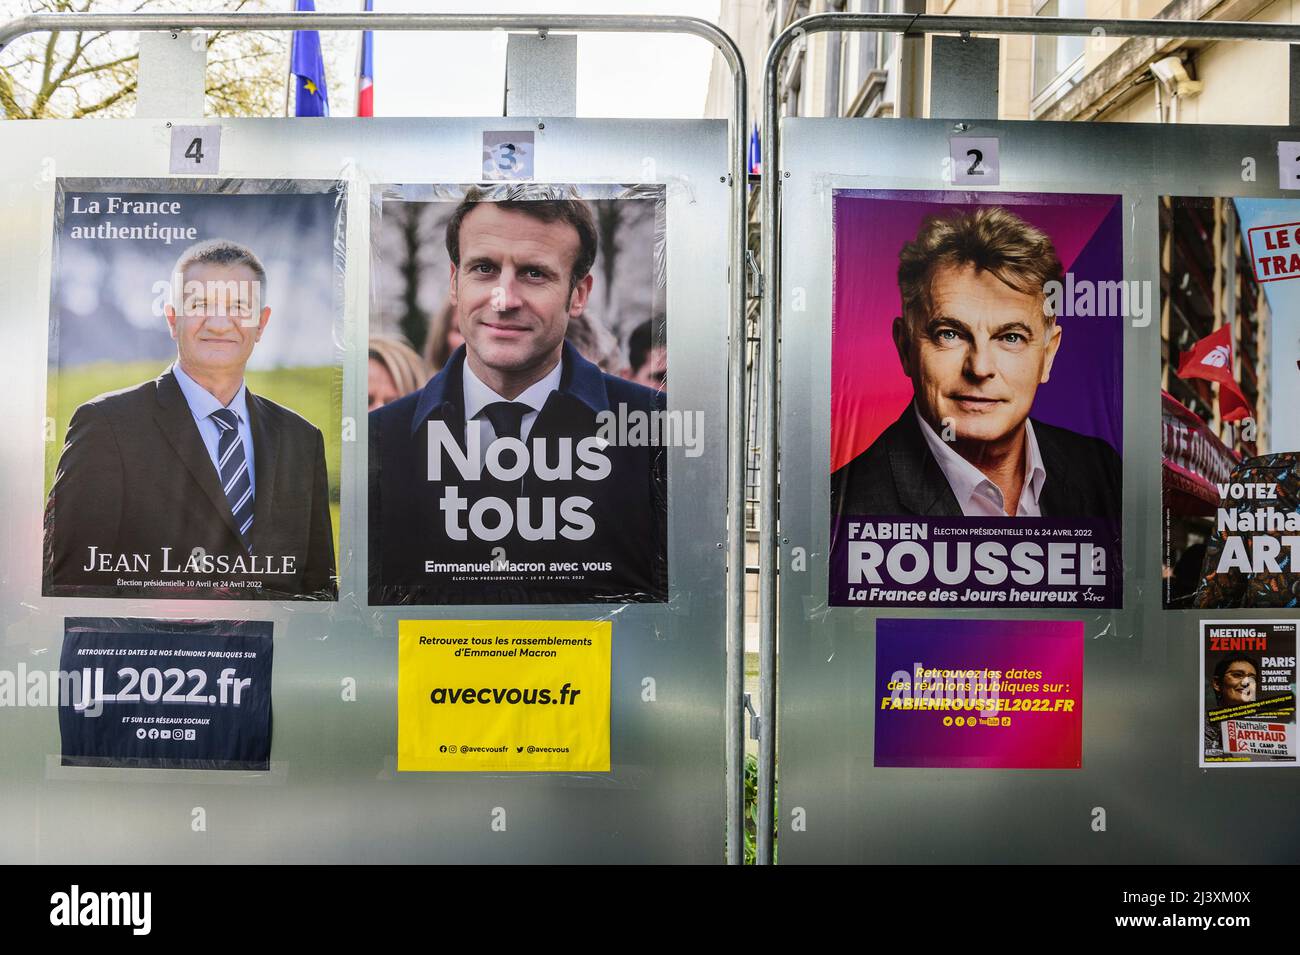 Un bureau de vote de l'ambassade de France à Bruxelles pour l'élection française attire les français vivant à Saint-Josse pour voter. Affiches de campagne | des b Banque D'Images